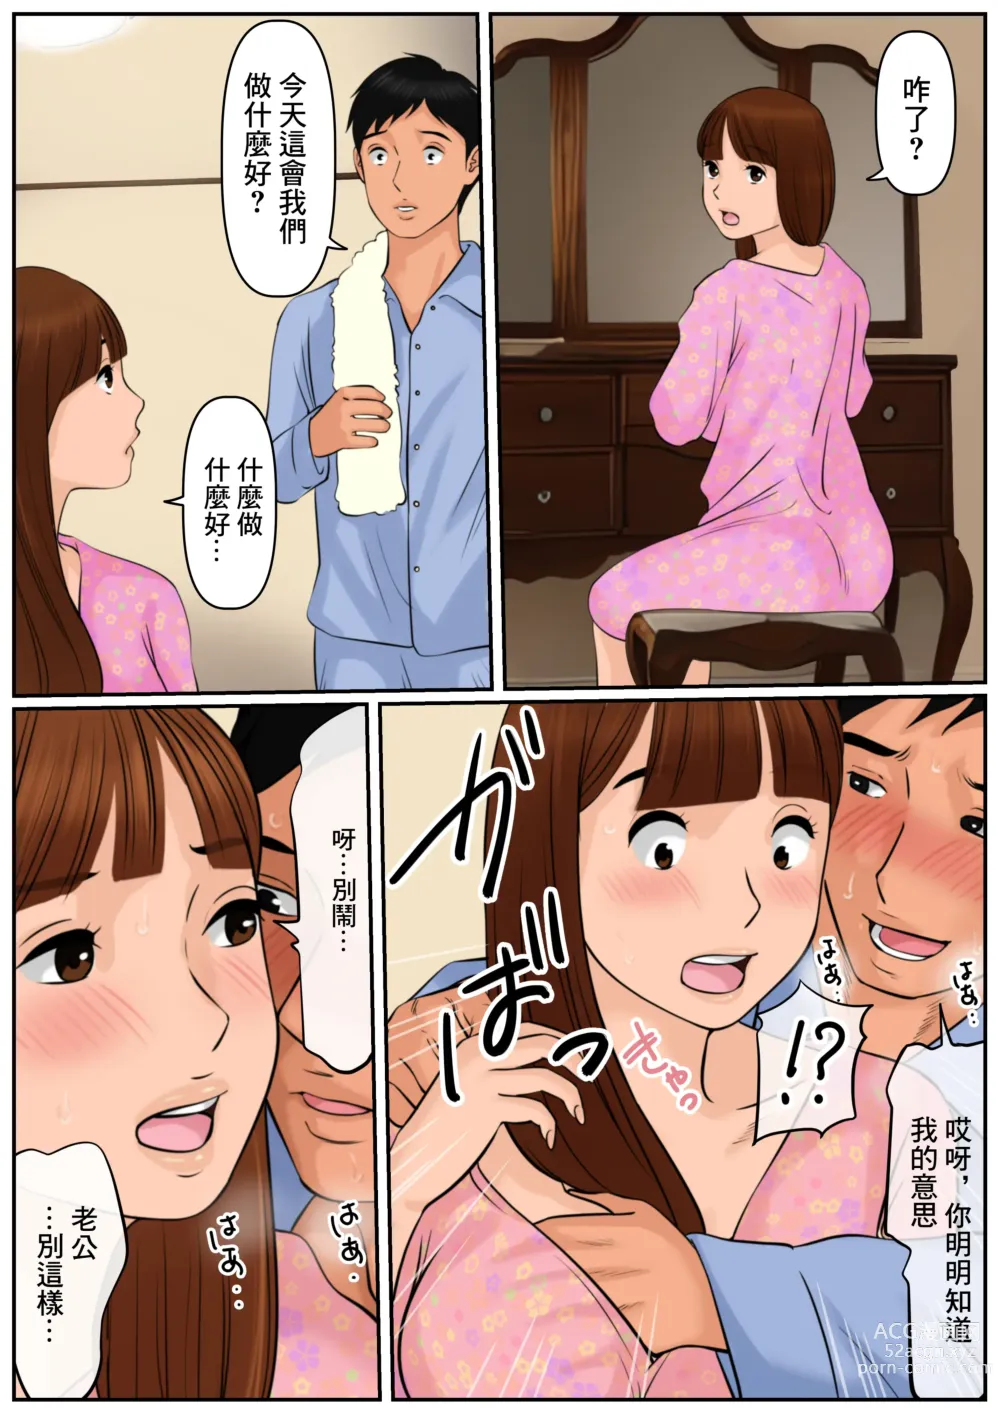 Page 14 of doujinshi 難道你是嫌棄我這個媽媽嗎?